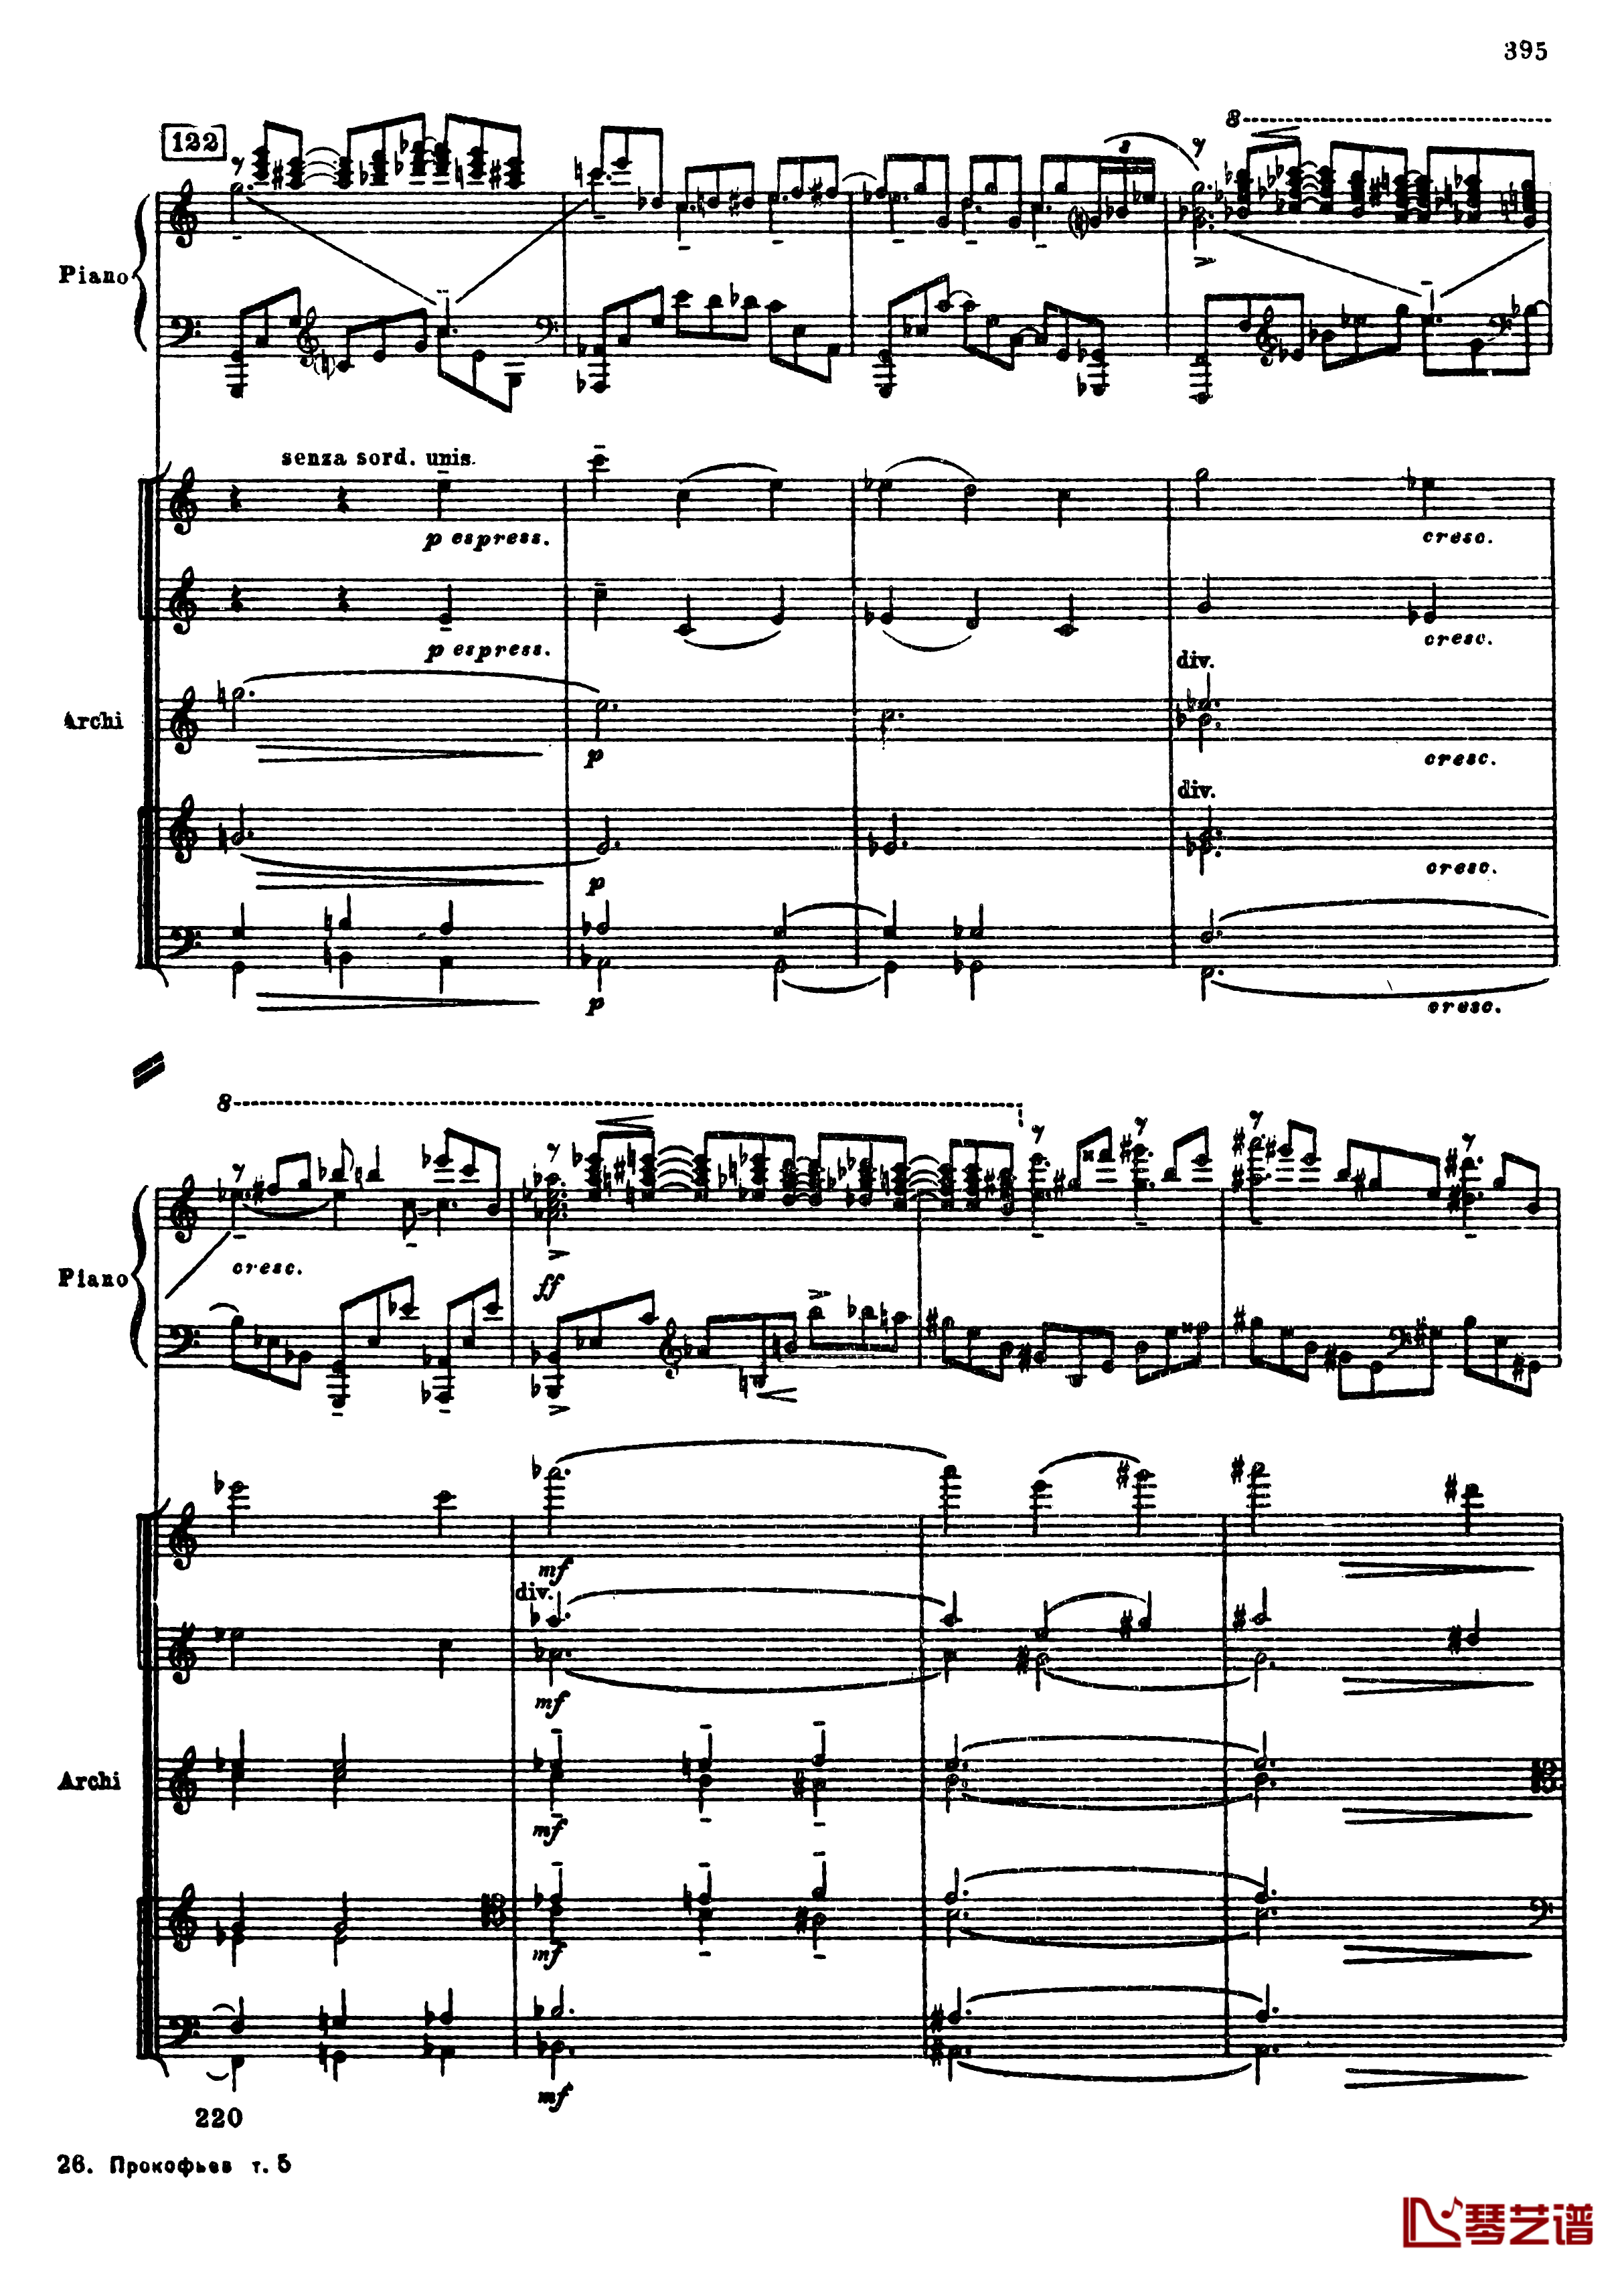 普罗科菲耶夫第三钢琴协奏曲钢琴谱-总谱-普罗科非耶夫127